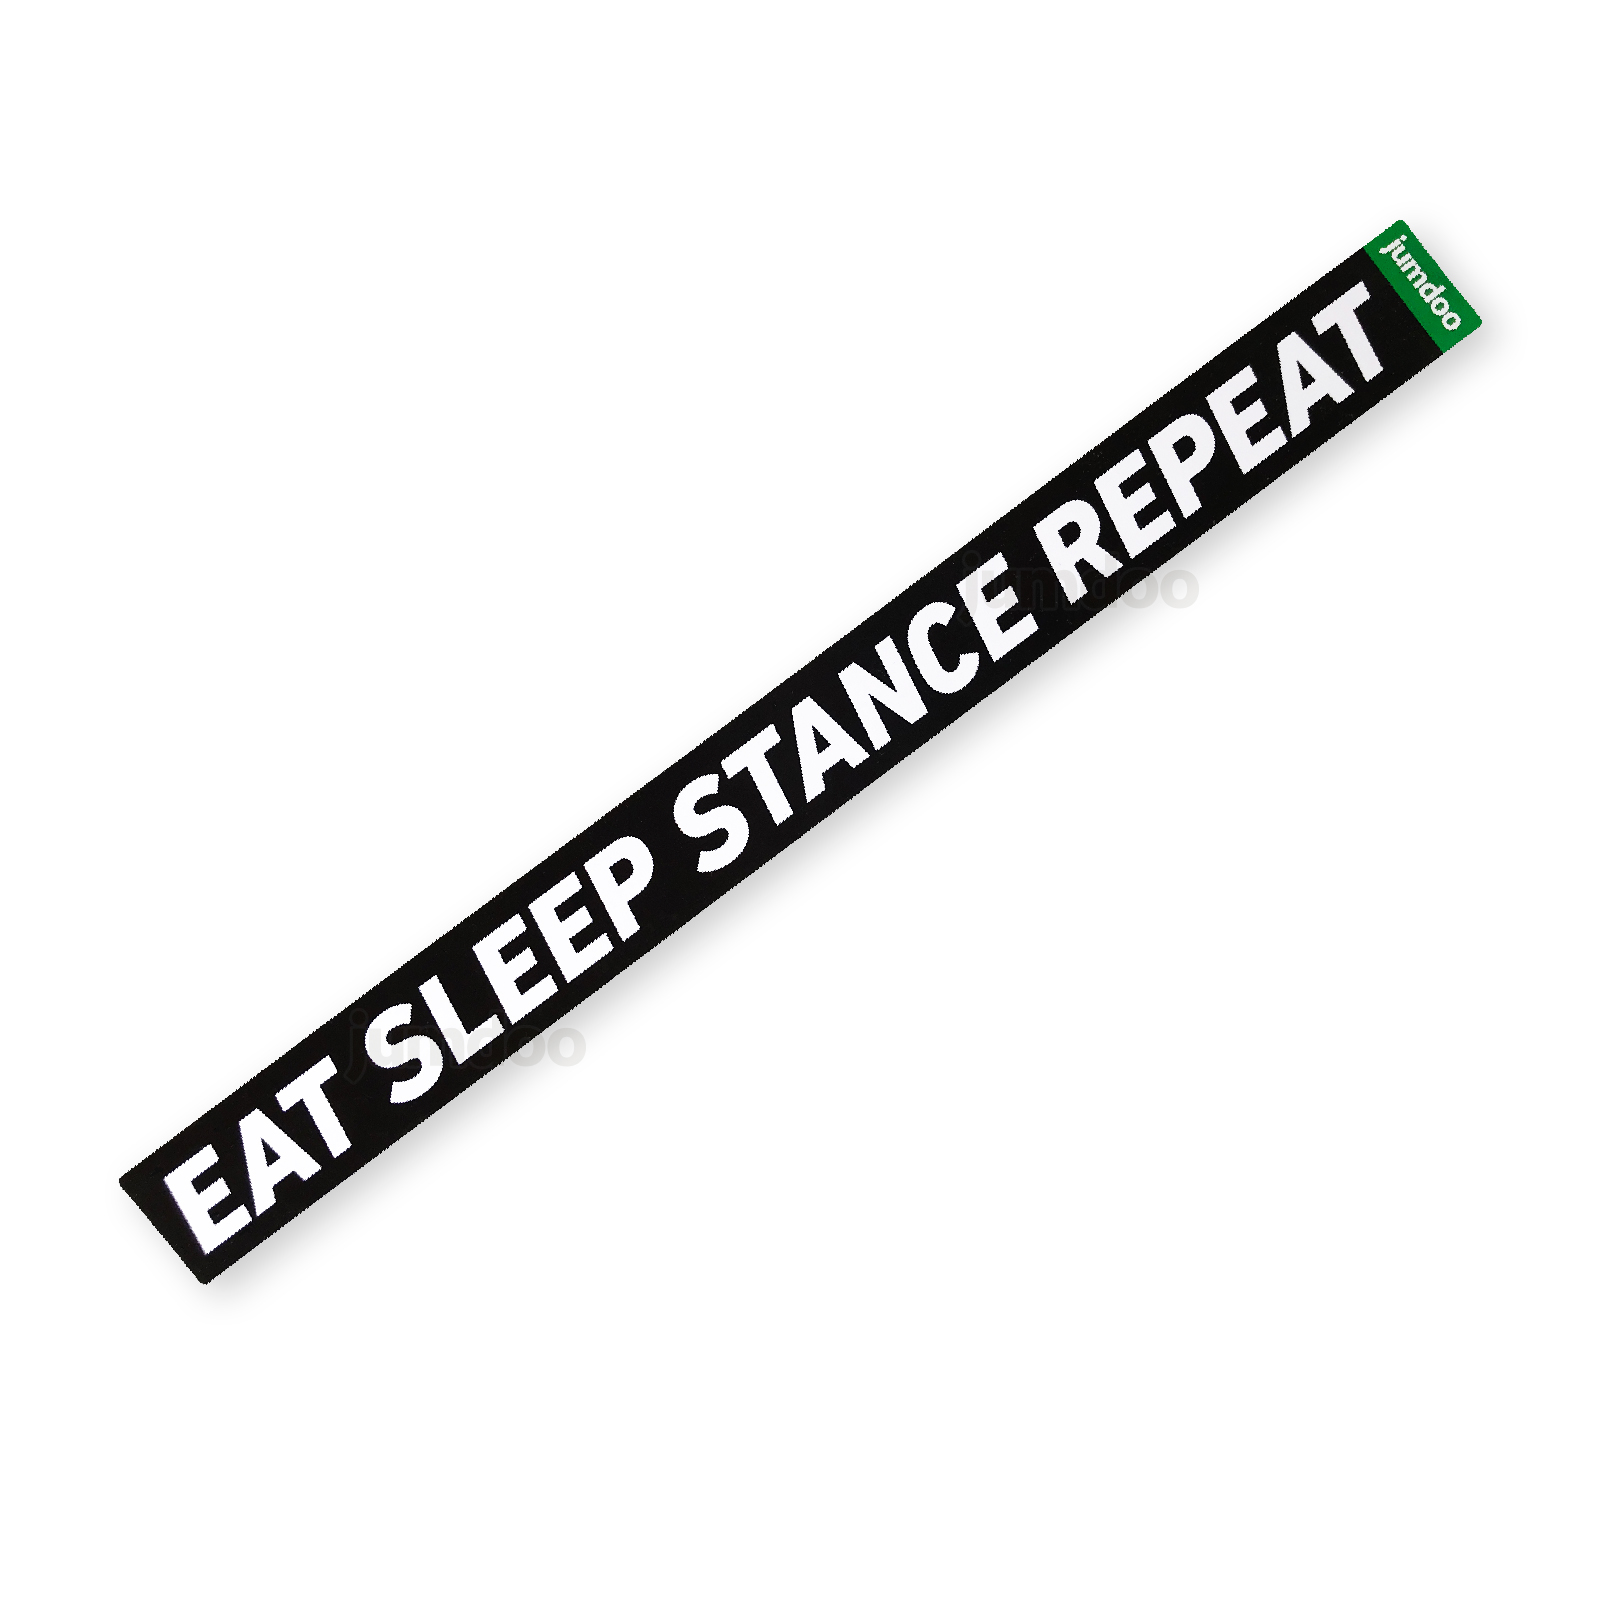 Eat sleep stance repeat black